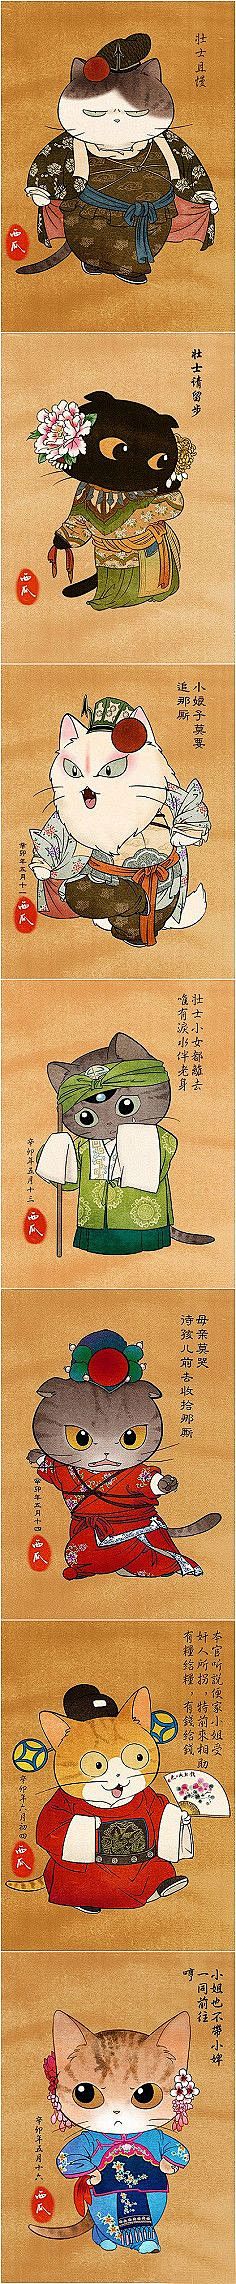 插画,漫画,服饰,古代 当猫咪和中国古代...